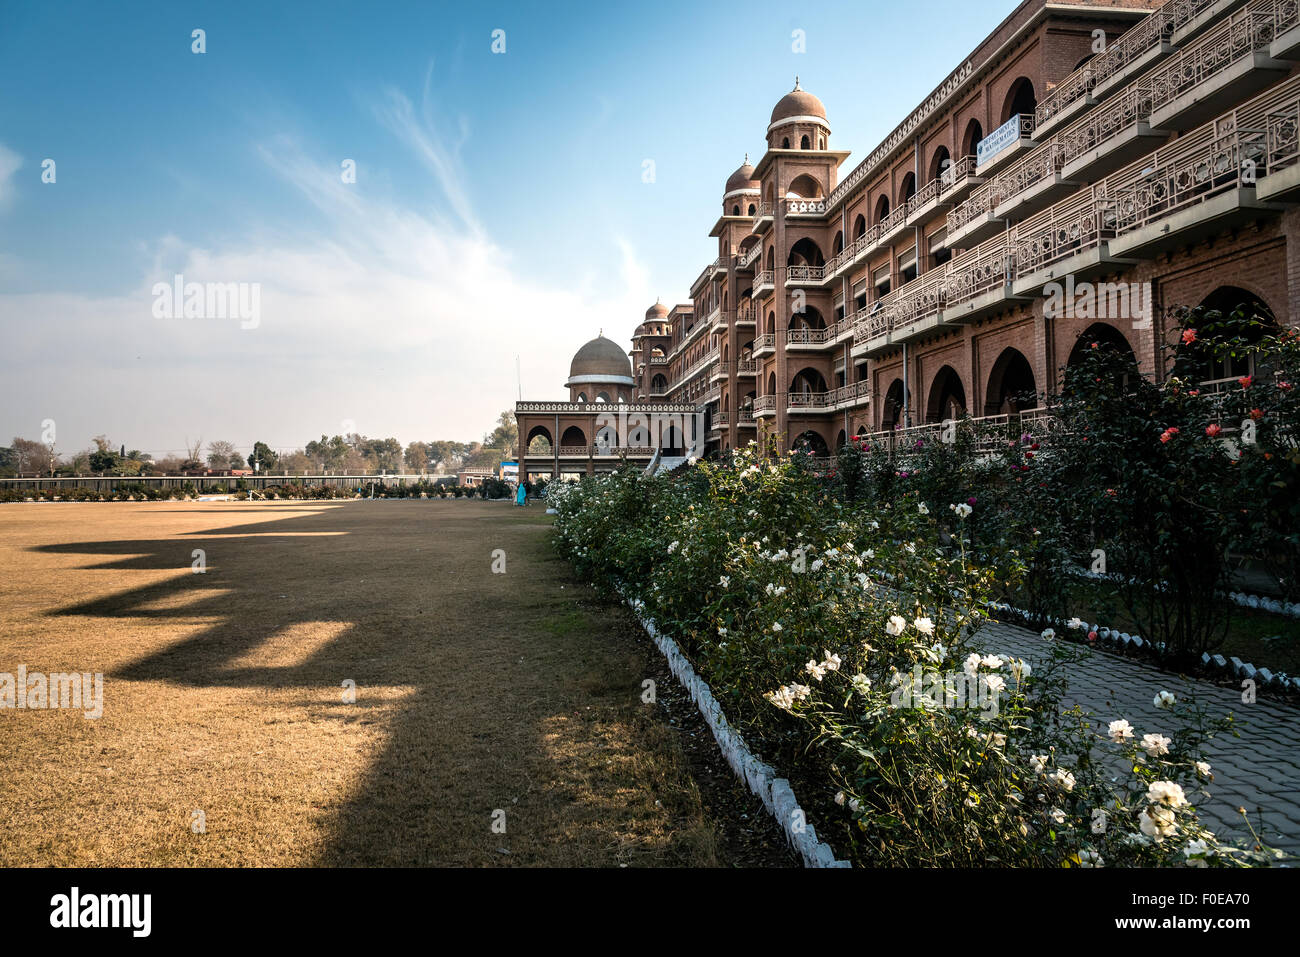 Nouveau campus de l'Université de Peshawar, au Pakistan. Bâtir dans la ville historique de style architectural. Ombre de l'édifice sur le casting gro Banque D'Images